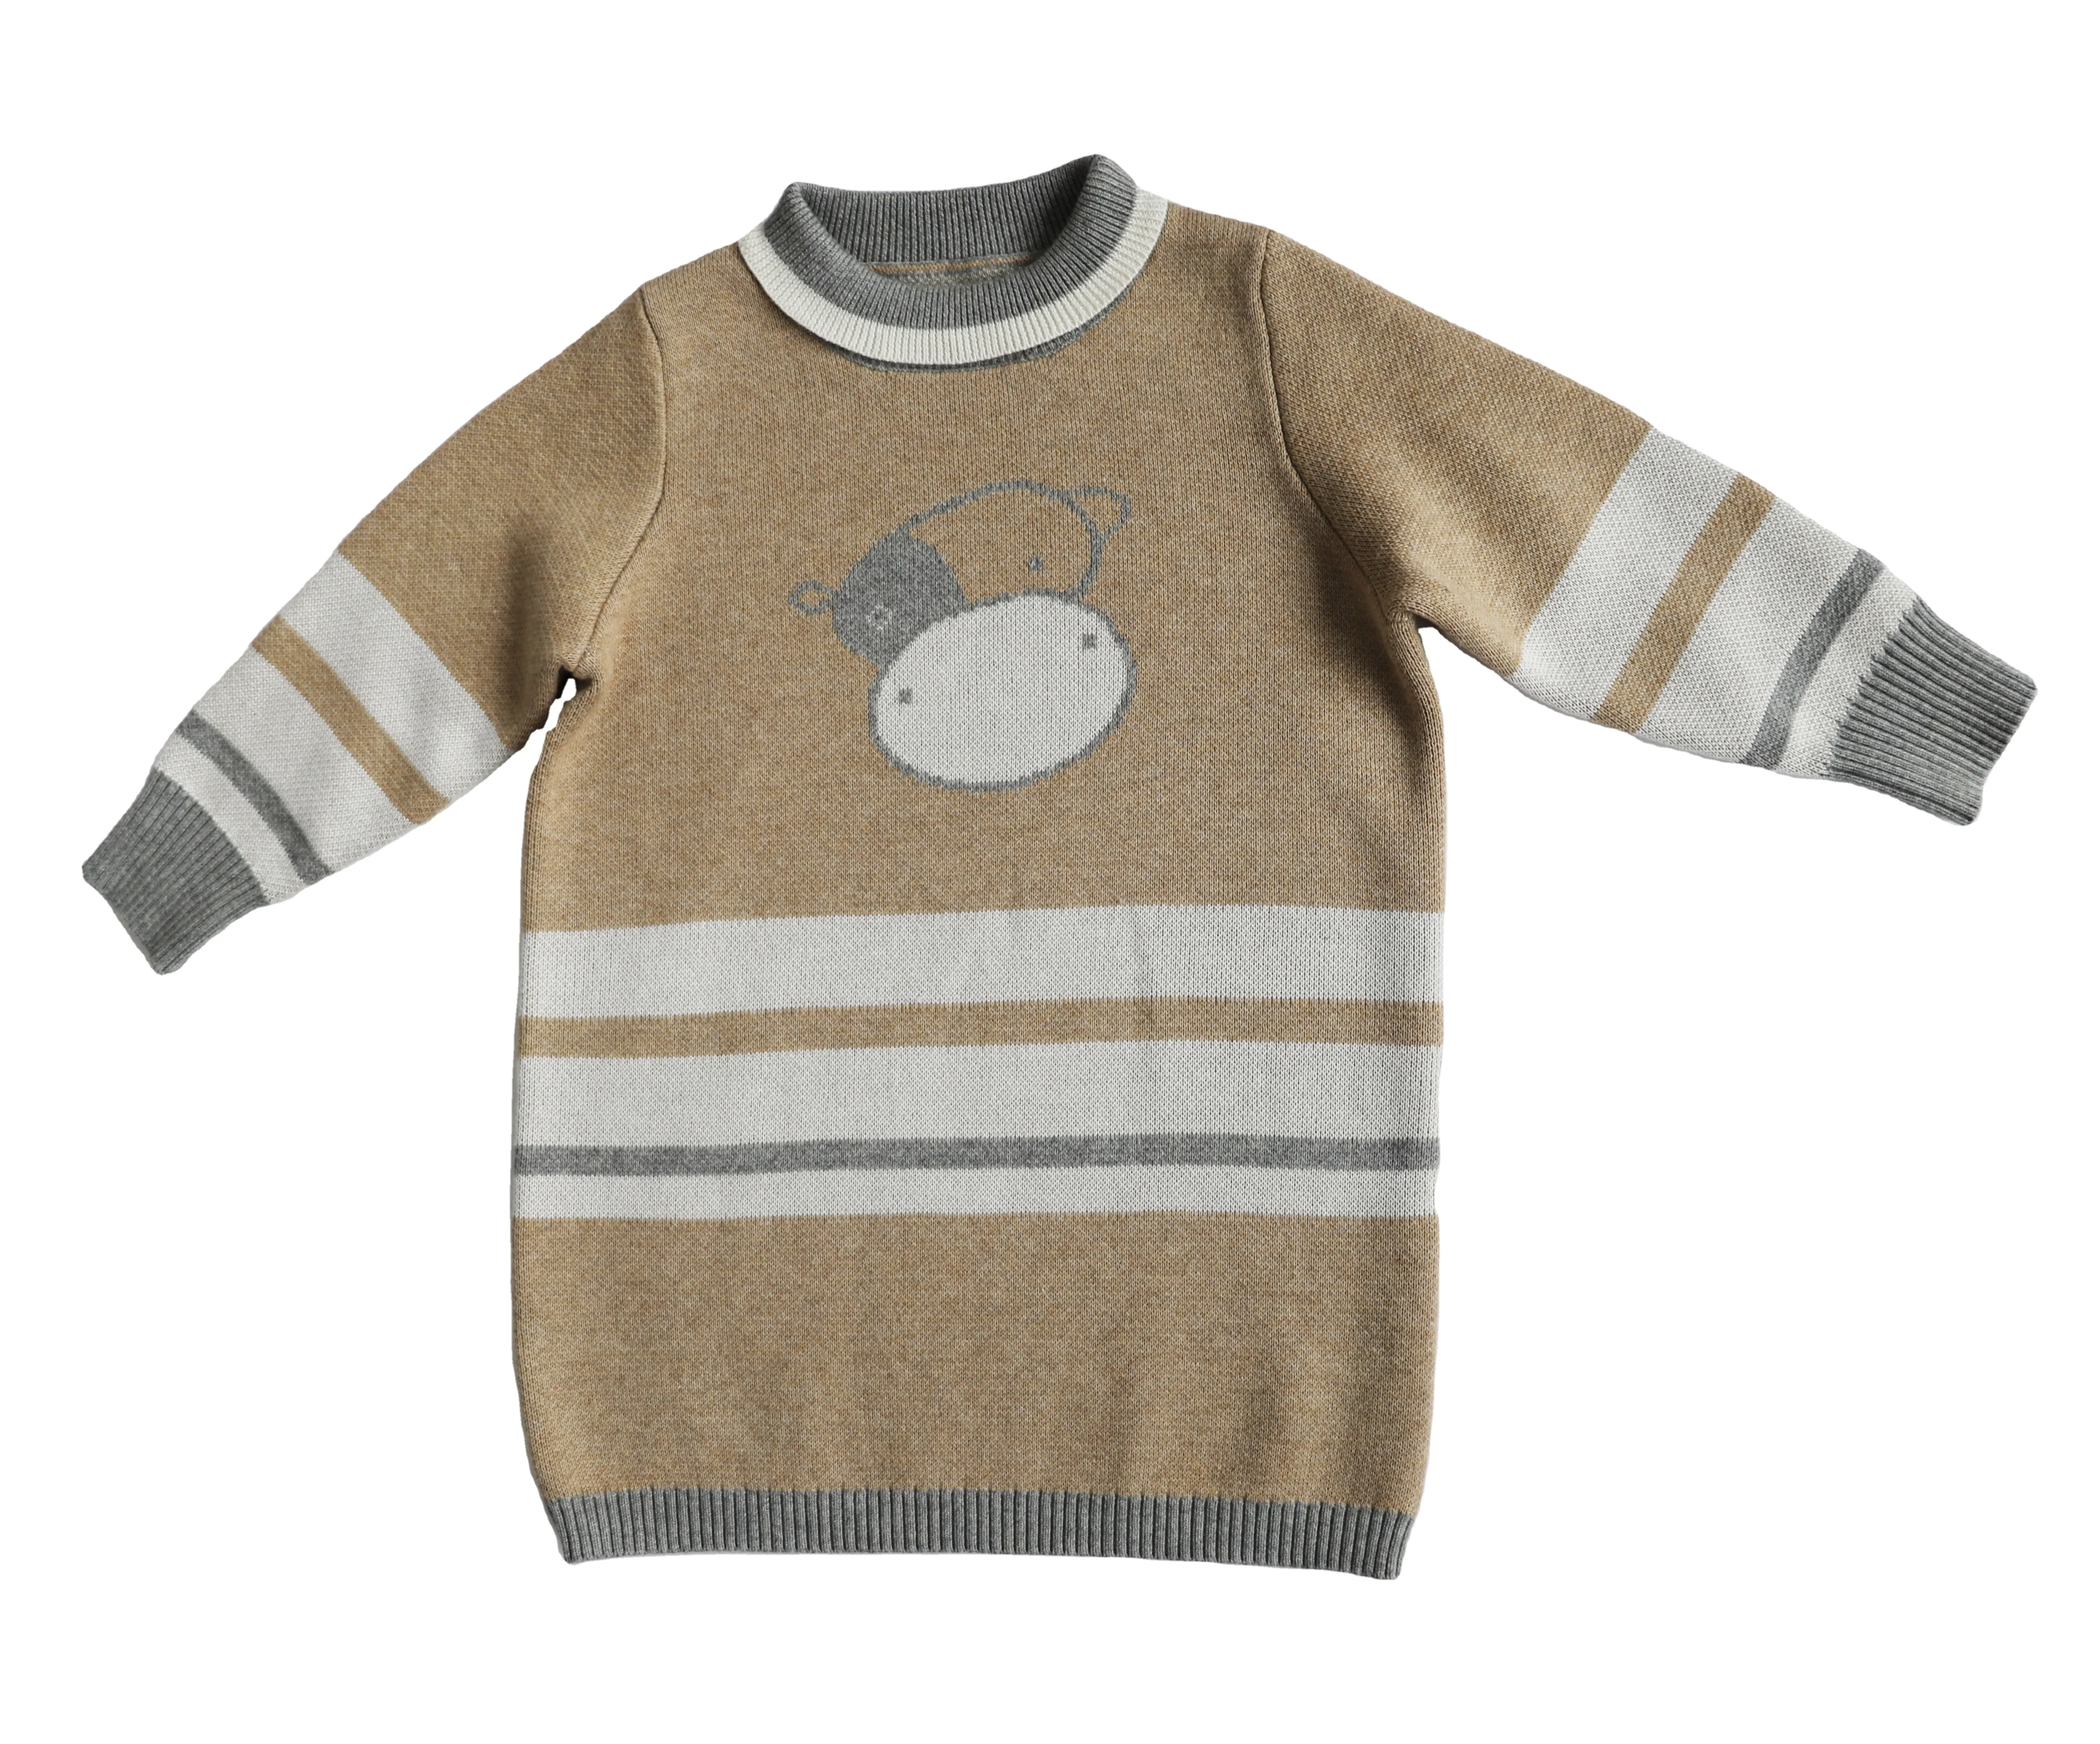 
2020 Fashion girls Kids Christmas Knit Baby Cotton Sweater 